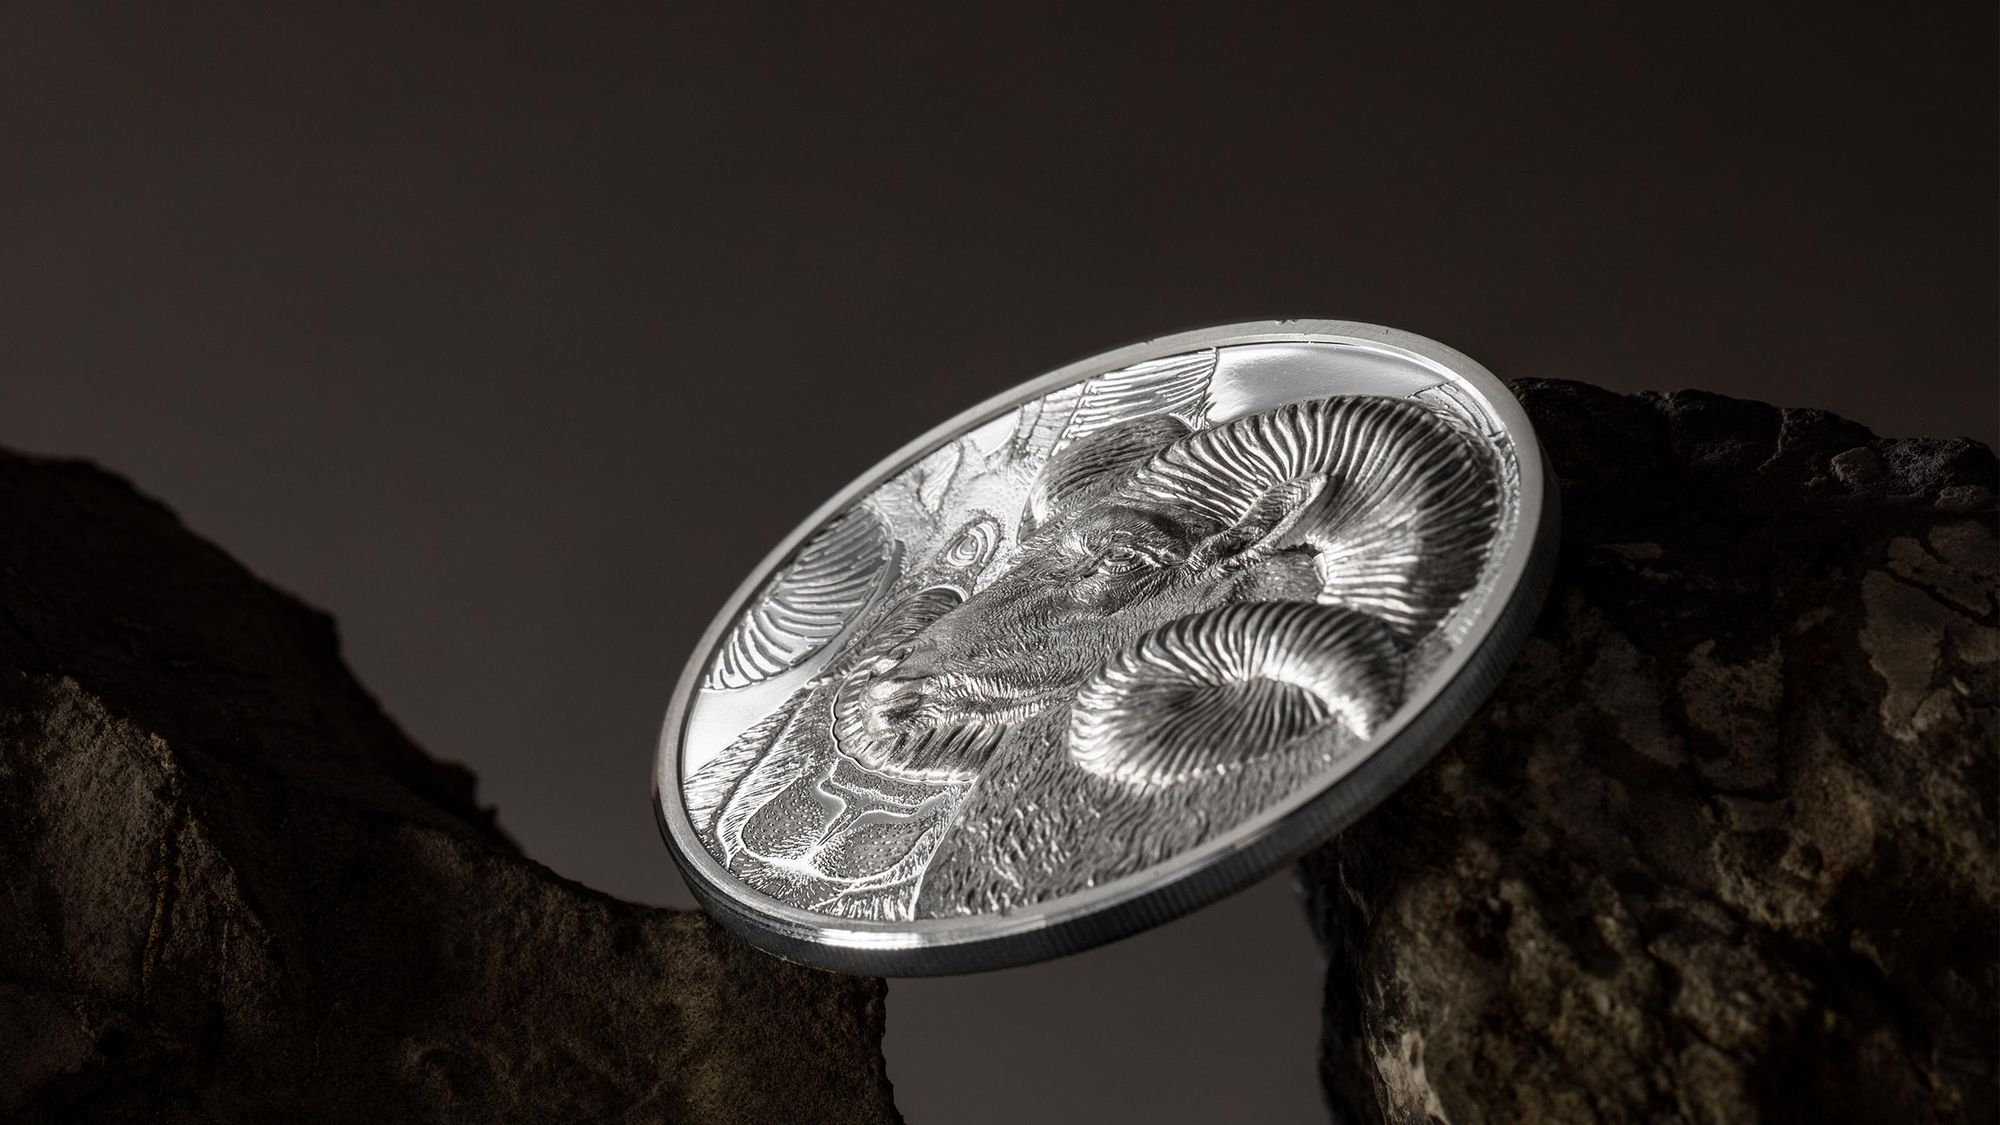 2022 Wild Mongolia Magnificent Argali 1oz Silver Coin